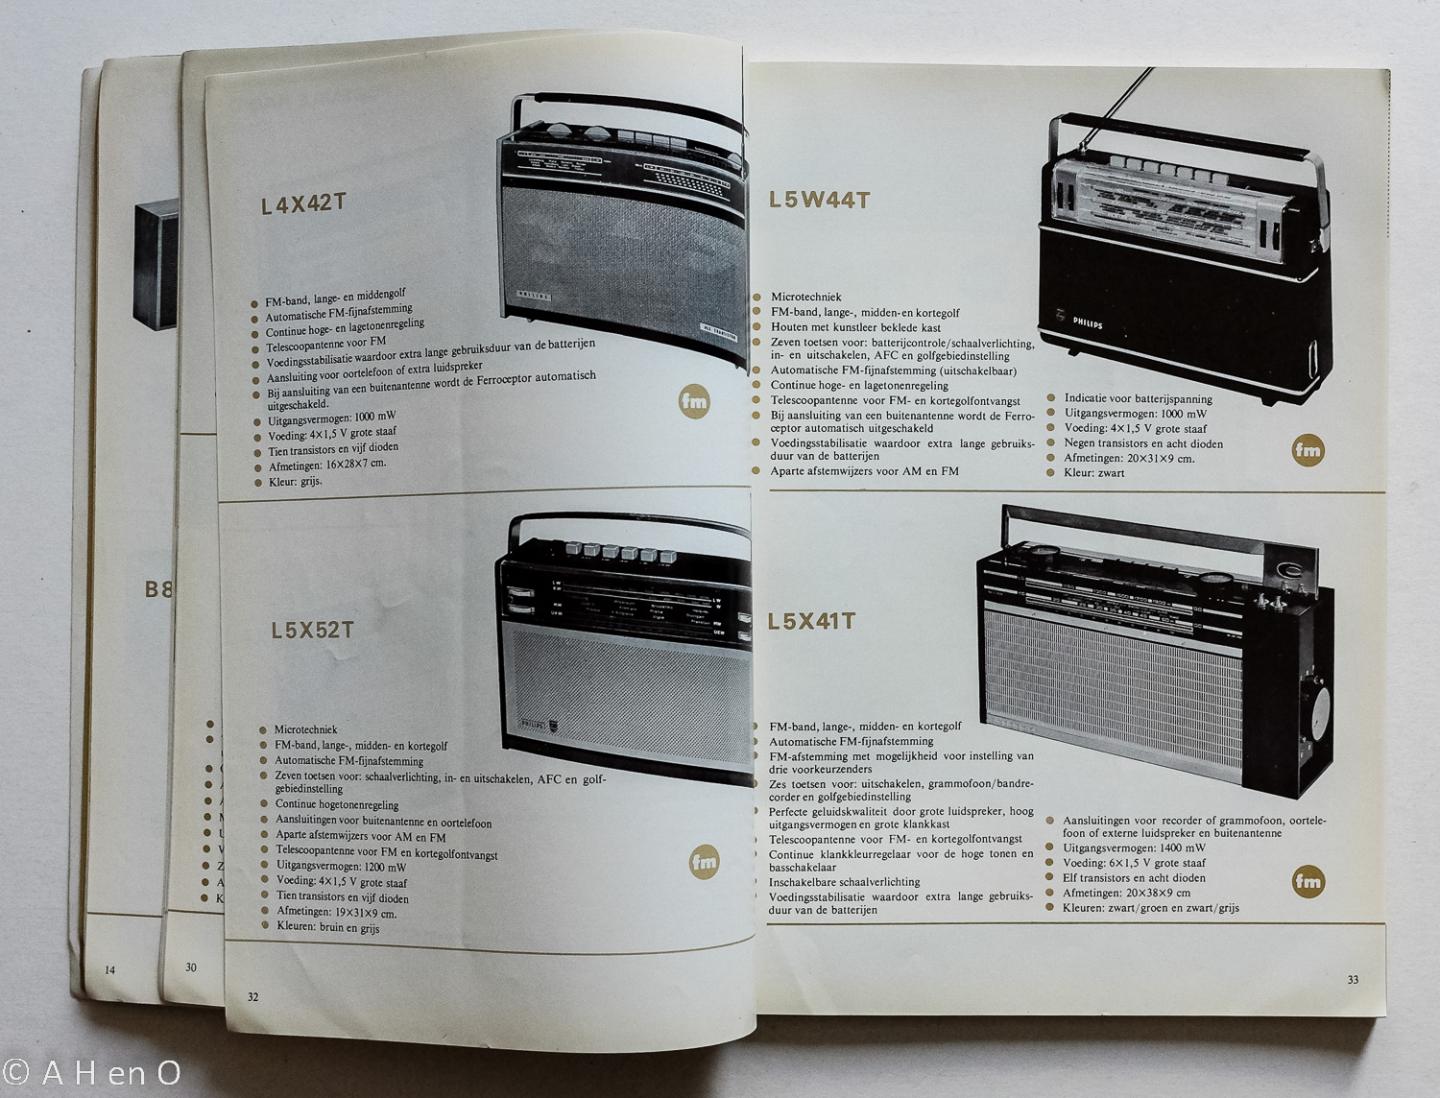 Philips Gloeilampenfabrieken Nederland n.v., Eindhoven - Philips  1965-1966 - Radio, Autoradio, Grammofoons. Bandrecorders, Elektro-akoustische apparatuur, bouwdozen